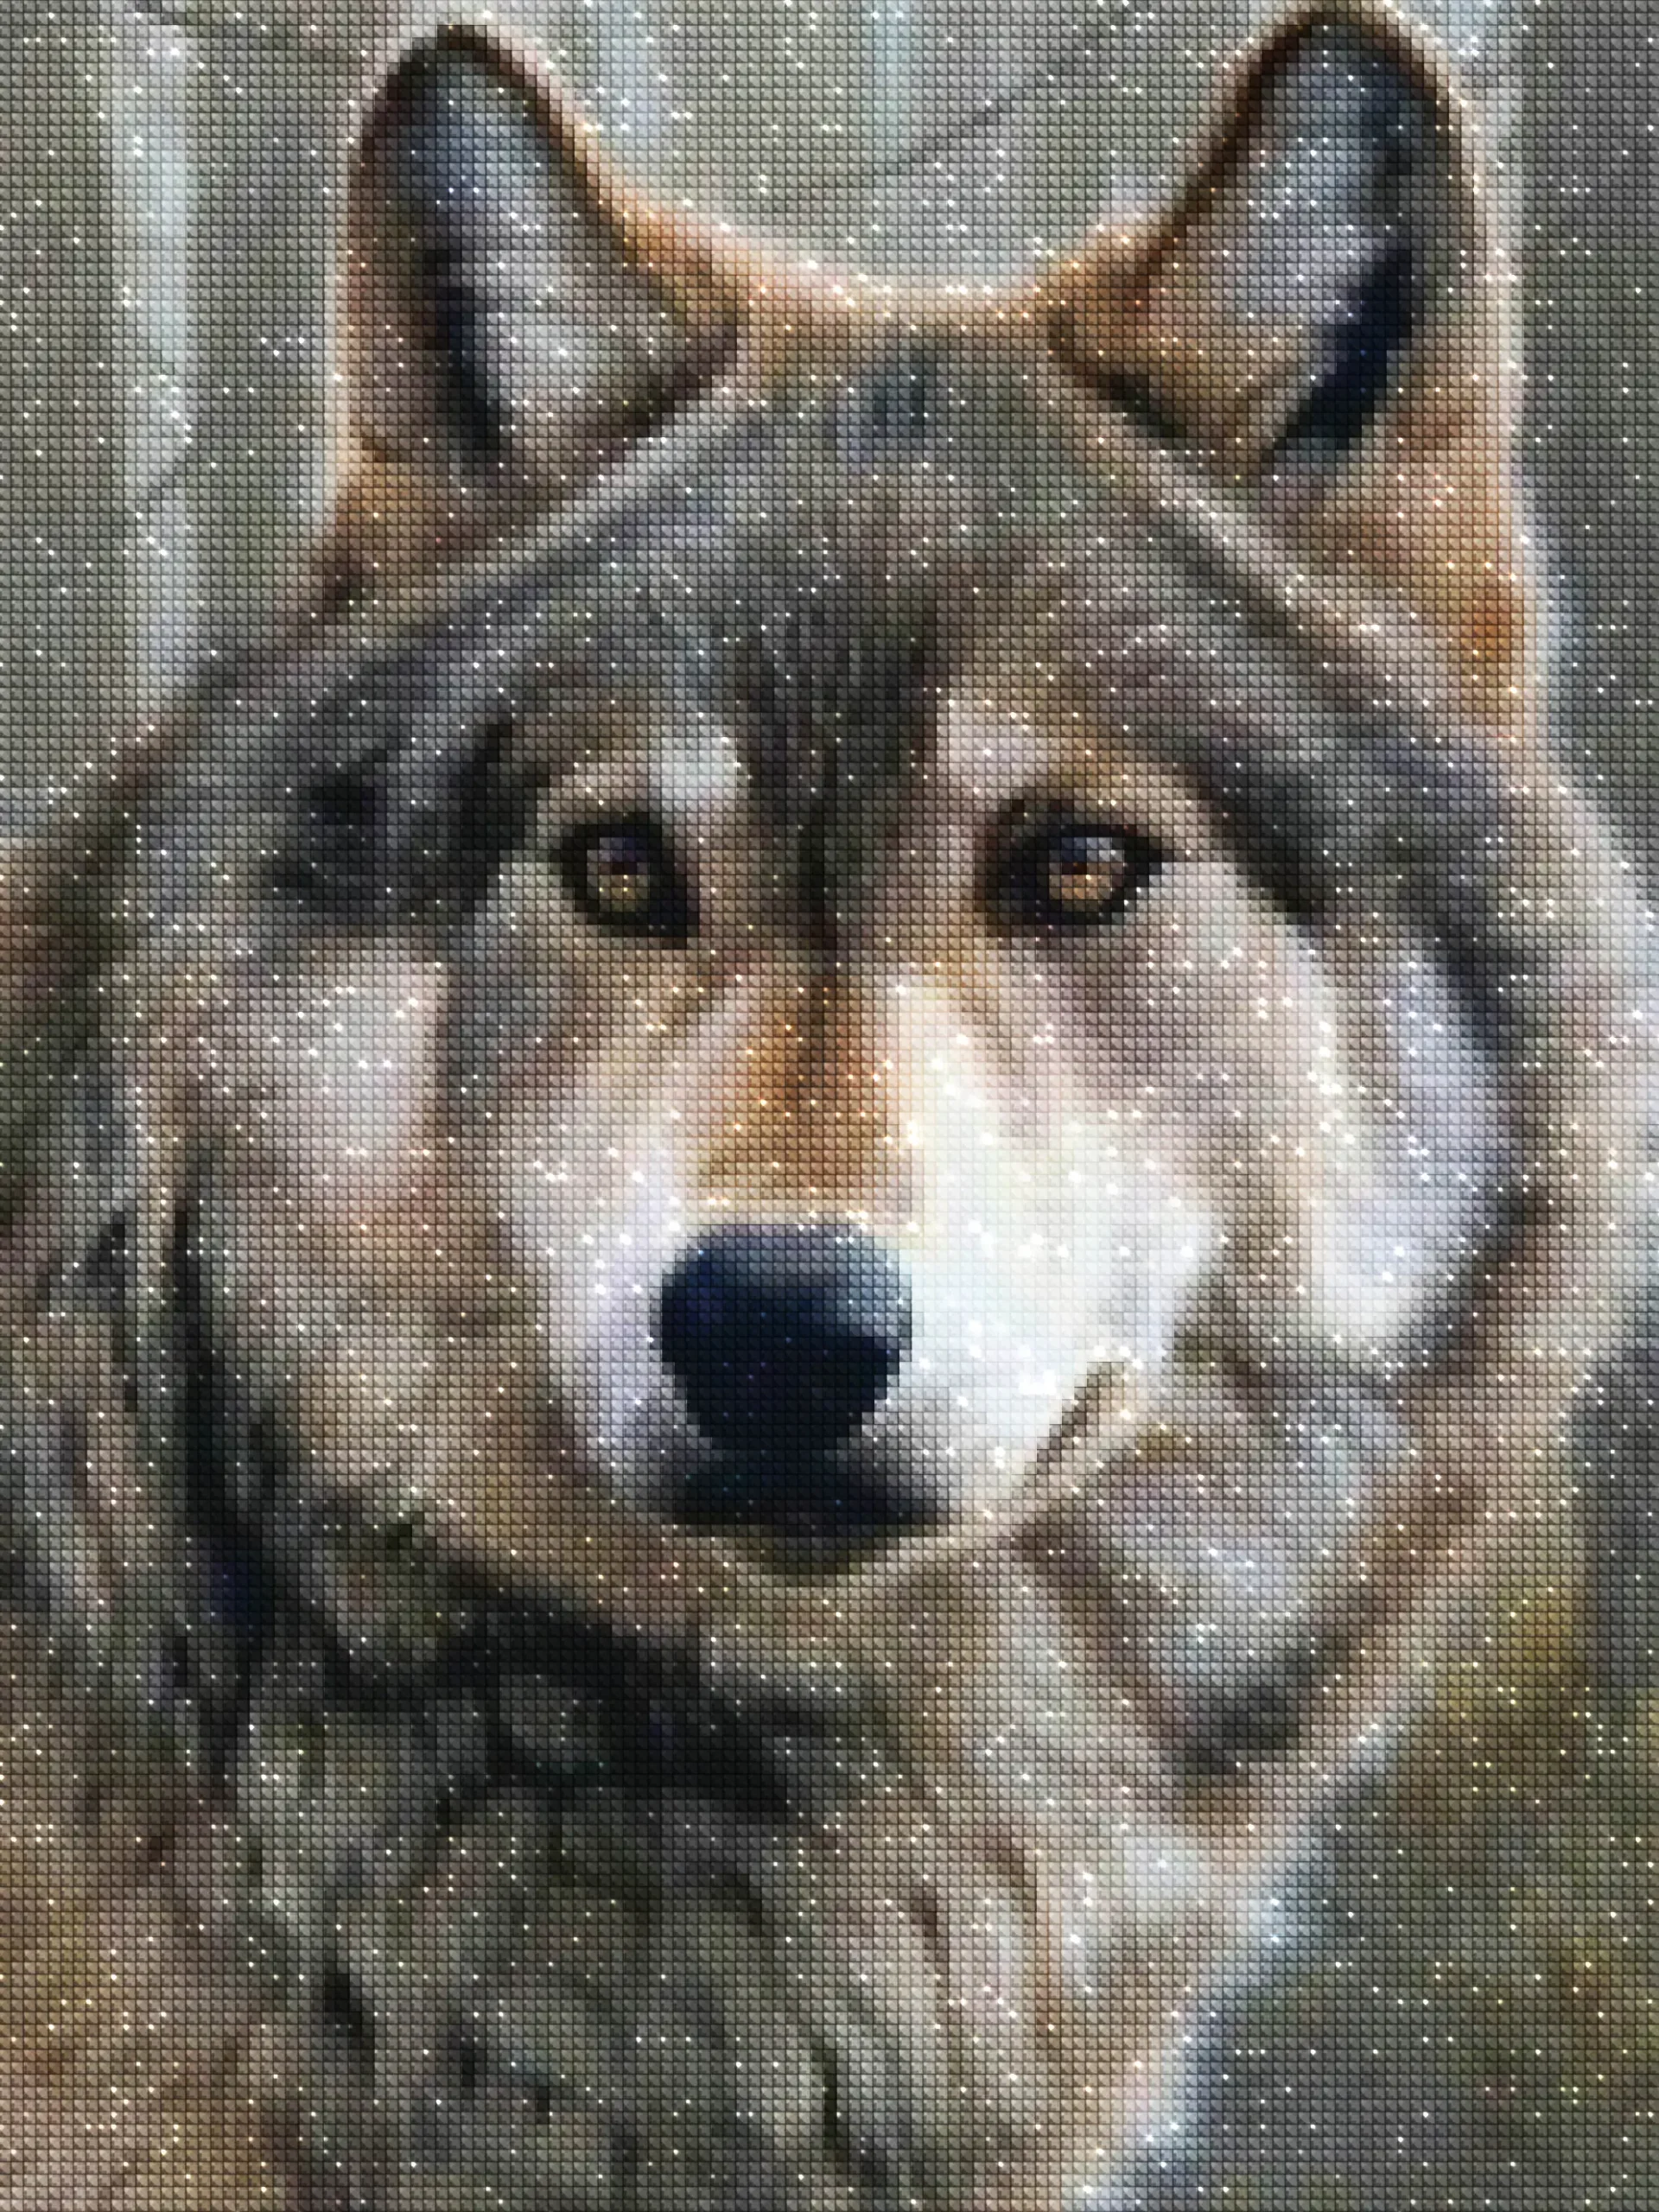 Diamonds-Wizard-Diamond-Painting-Kits-Animals-Wolf-Gray Wolf Stare-diamonds.webp